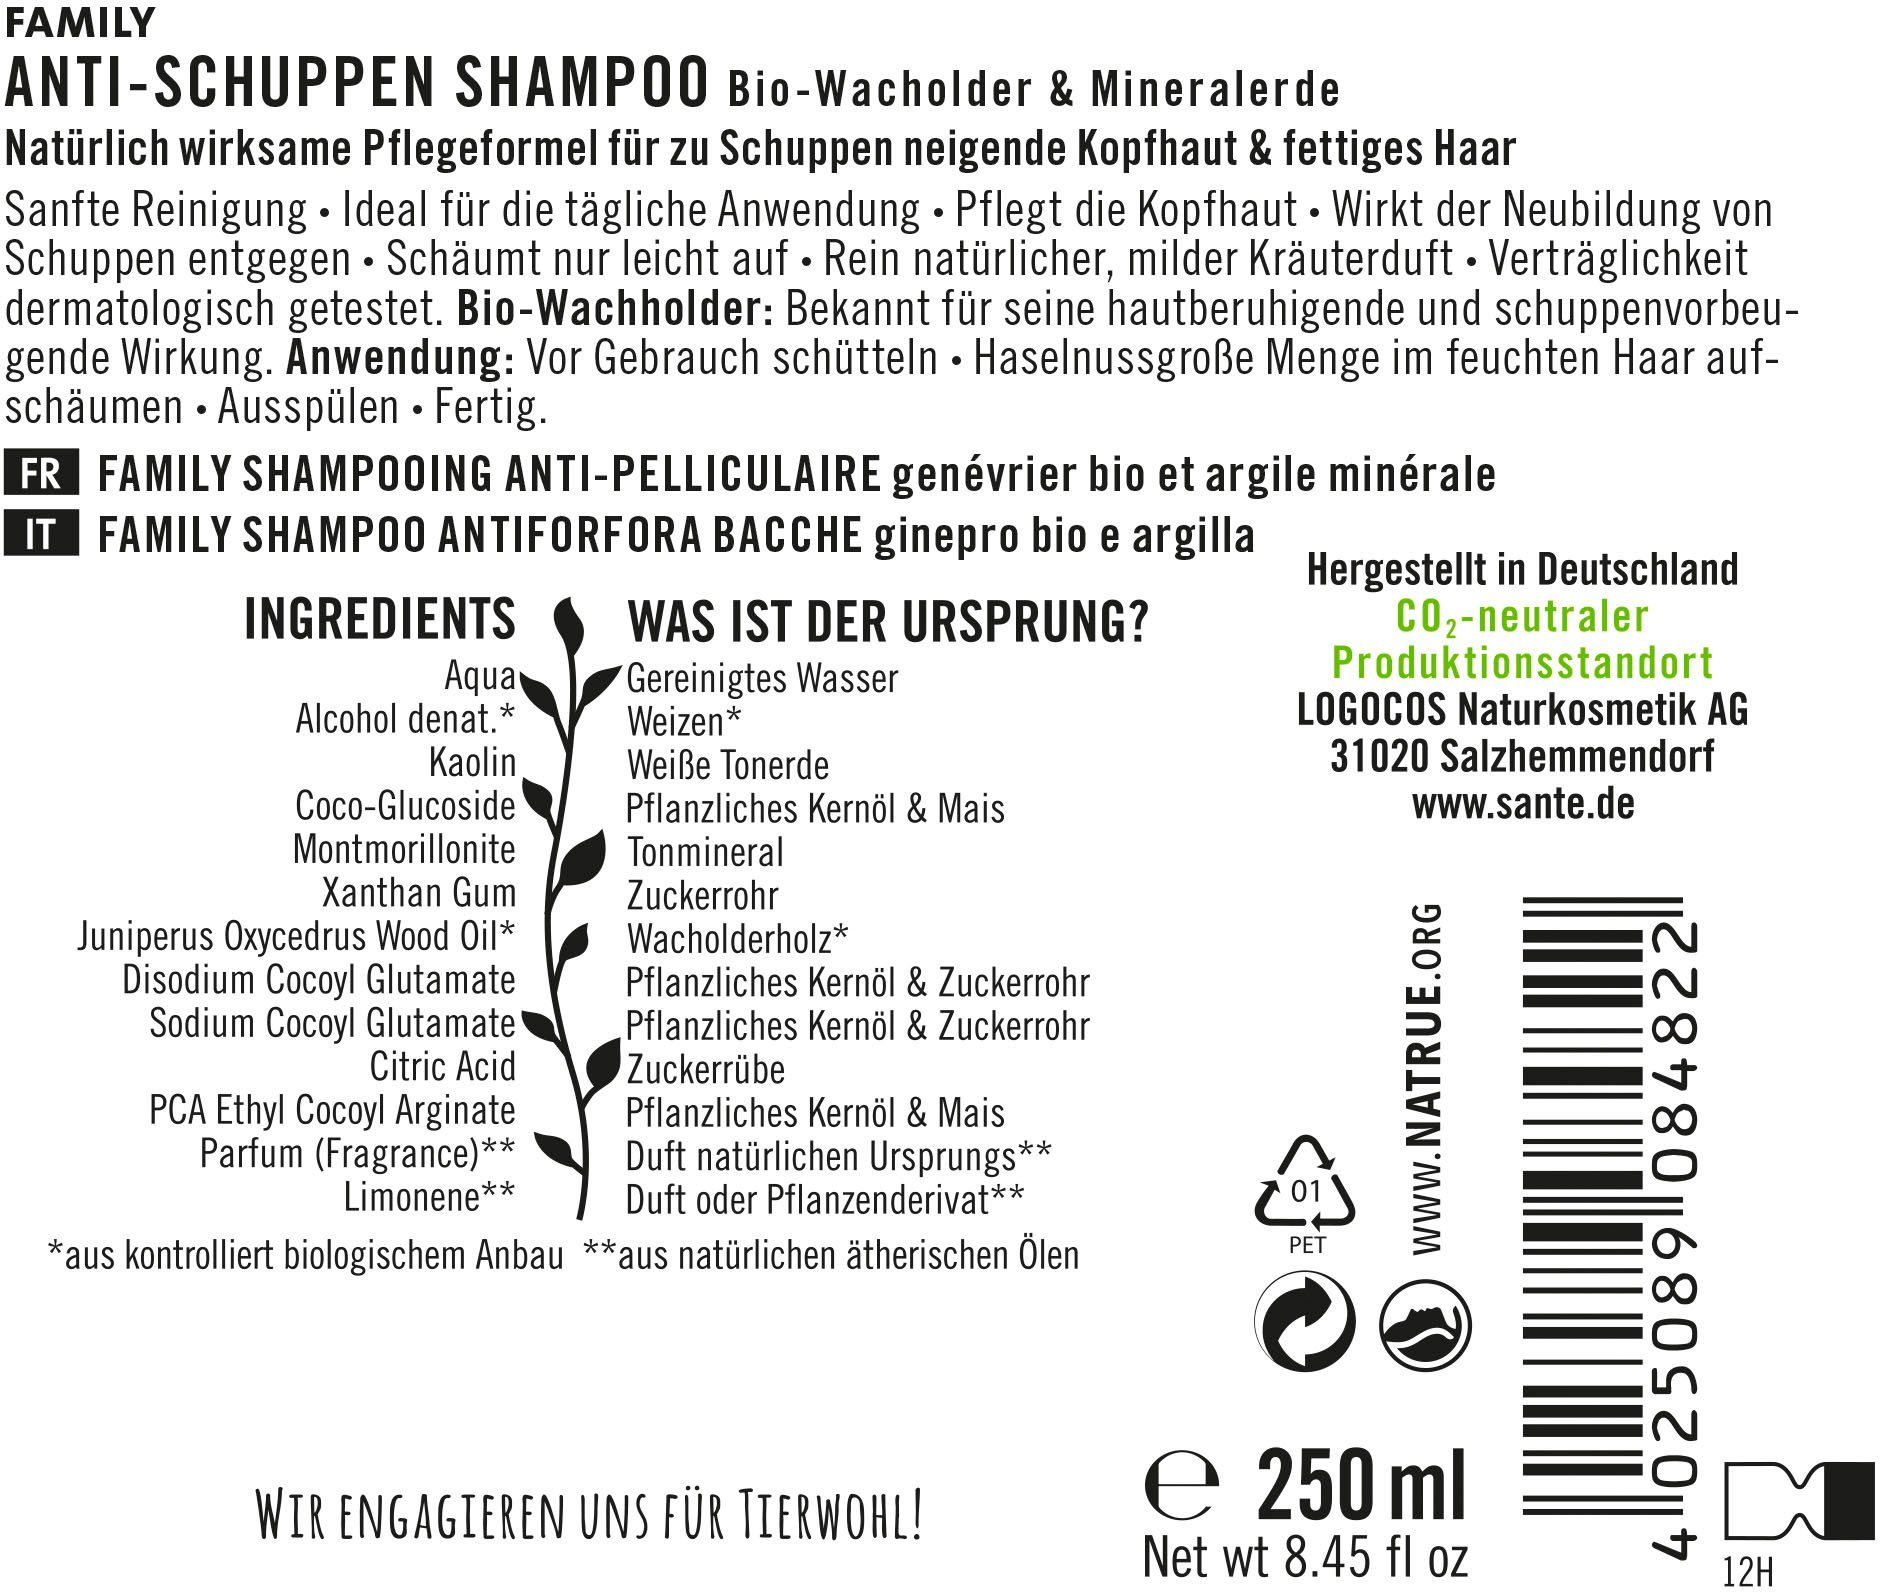 Anti-Schuppen Haarshampoo Shampoo FAMILY SANTE